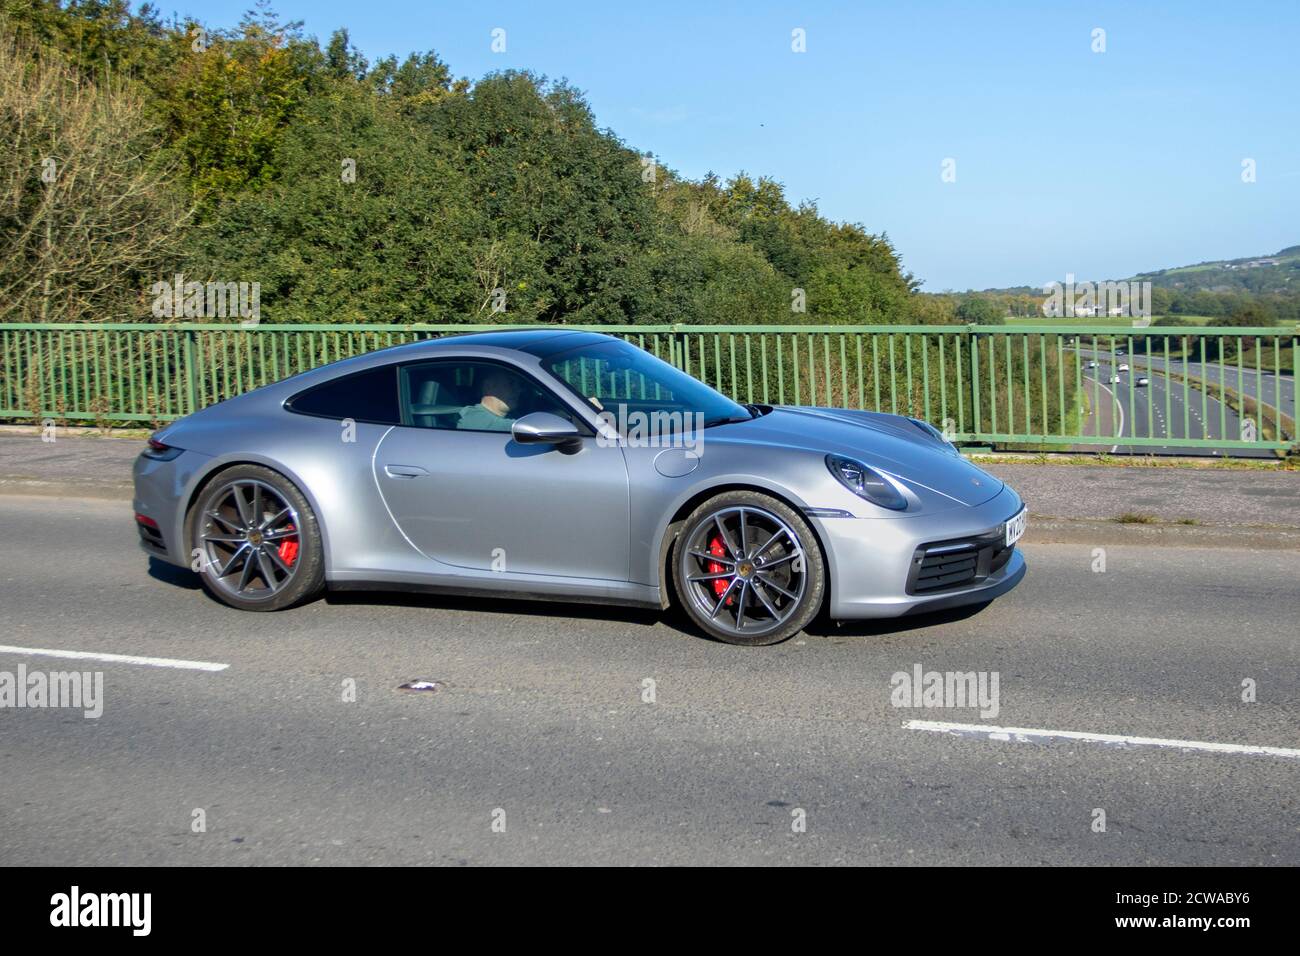 2020 Porsche 911 Carrera 4S S S-A; traffico veicolare, veicoli in  movimento, automobili, veicoli in circolazione su strade del Regno Unito,  motori, motori sportivi in motorizzazione sulla rete stradale autostradale  M6 Foto